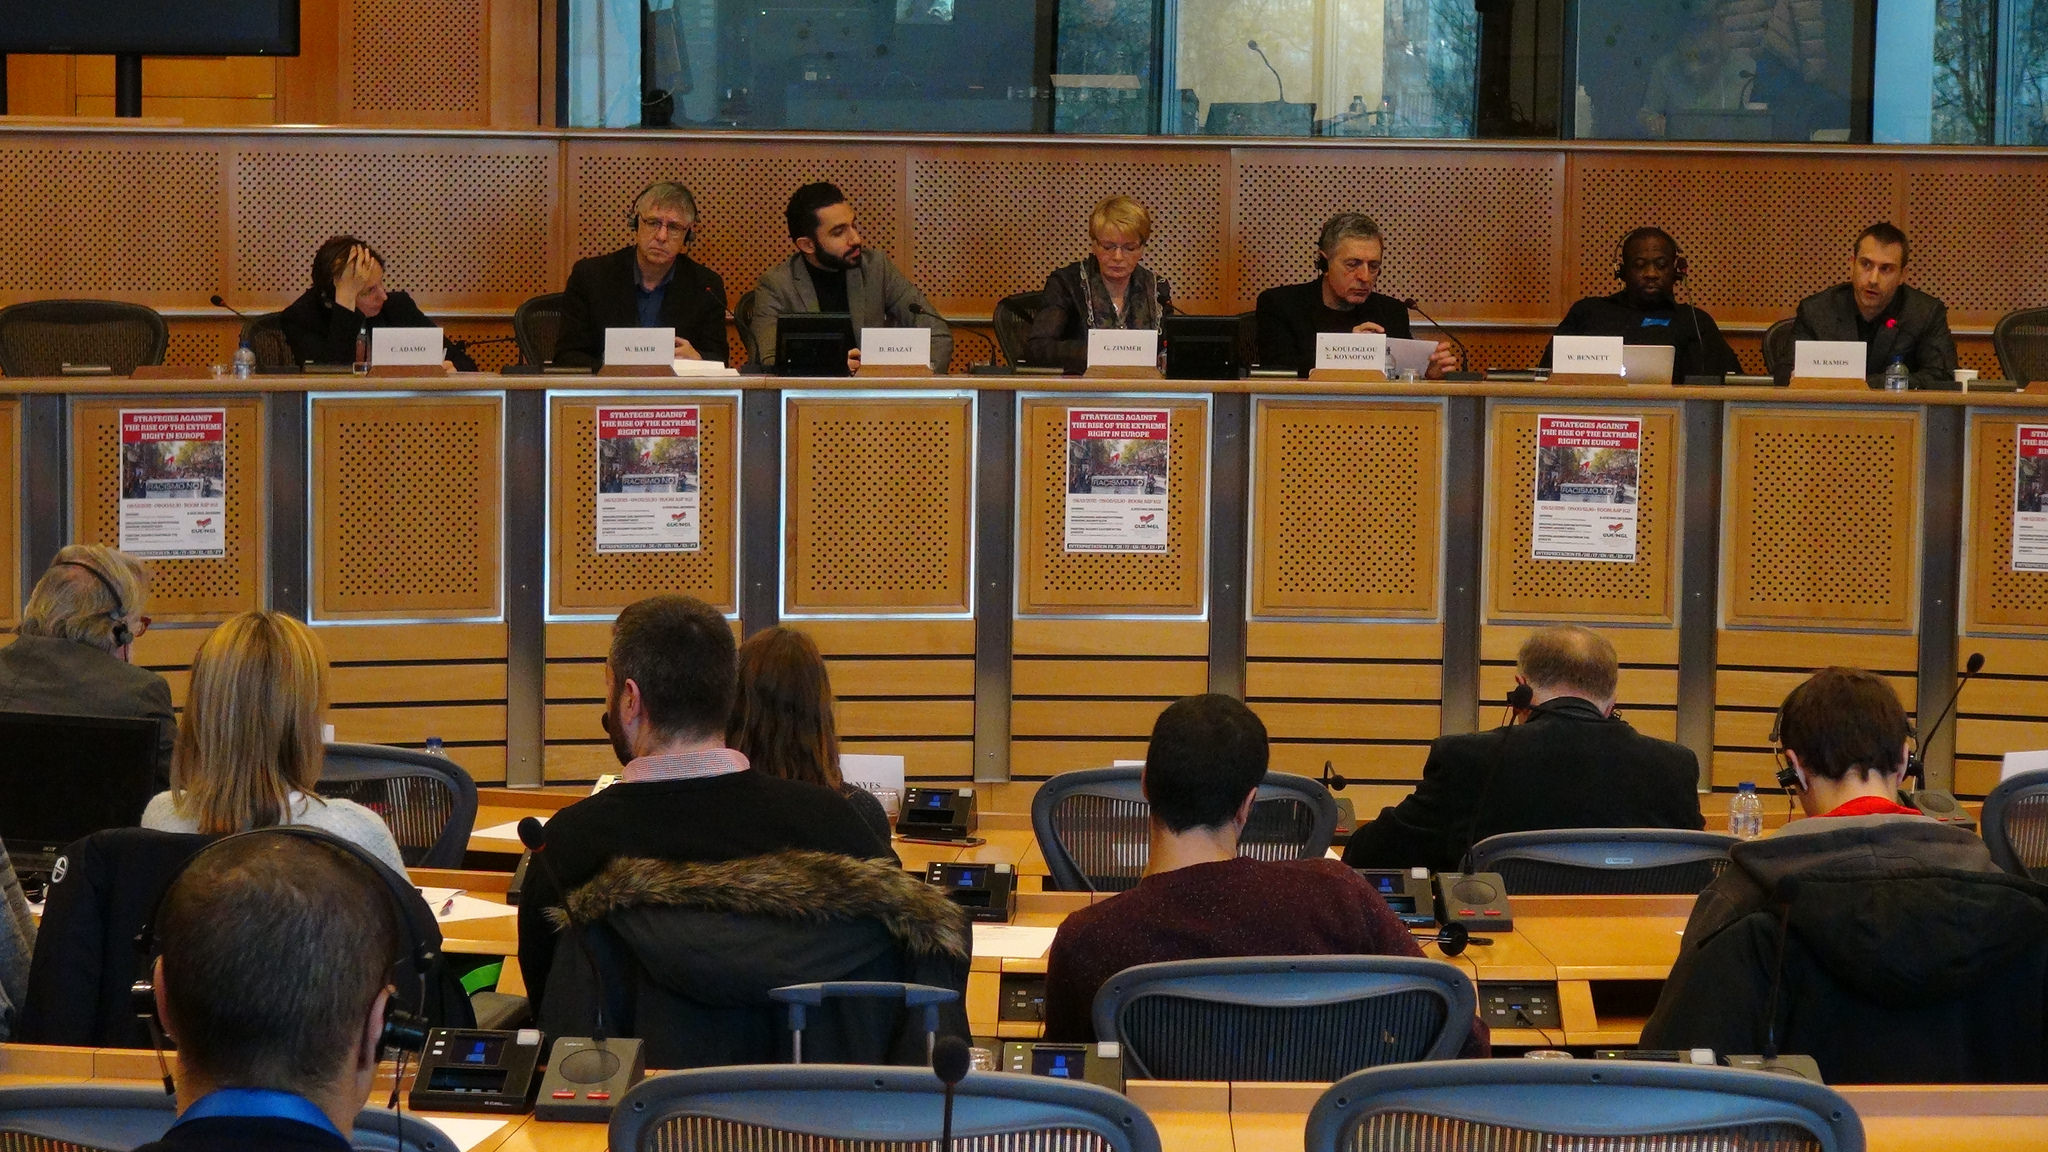 Στέλιος Κούλογλου: Επιστροφή στην Ευρώπη της δημοκρατίας και της αλληλεγγύης για να χτυπήσουμε την ακροδεξιά